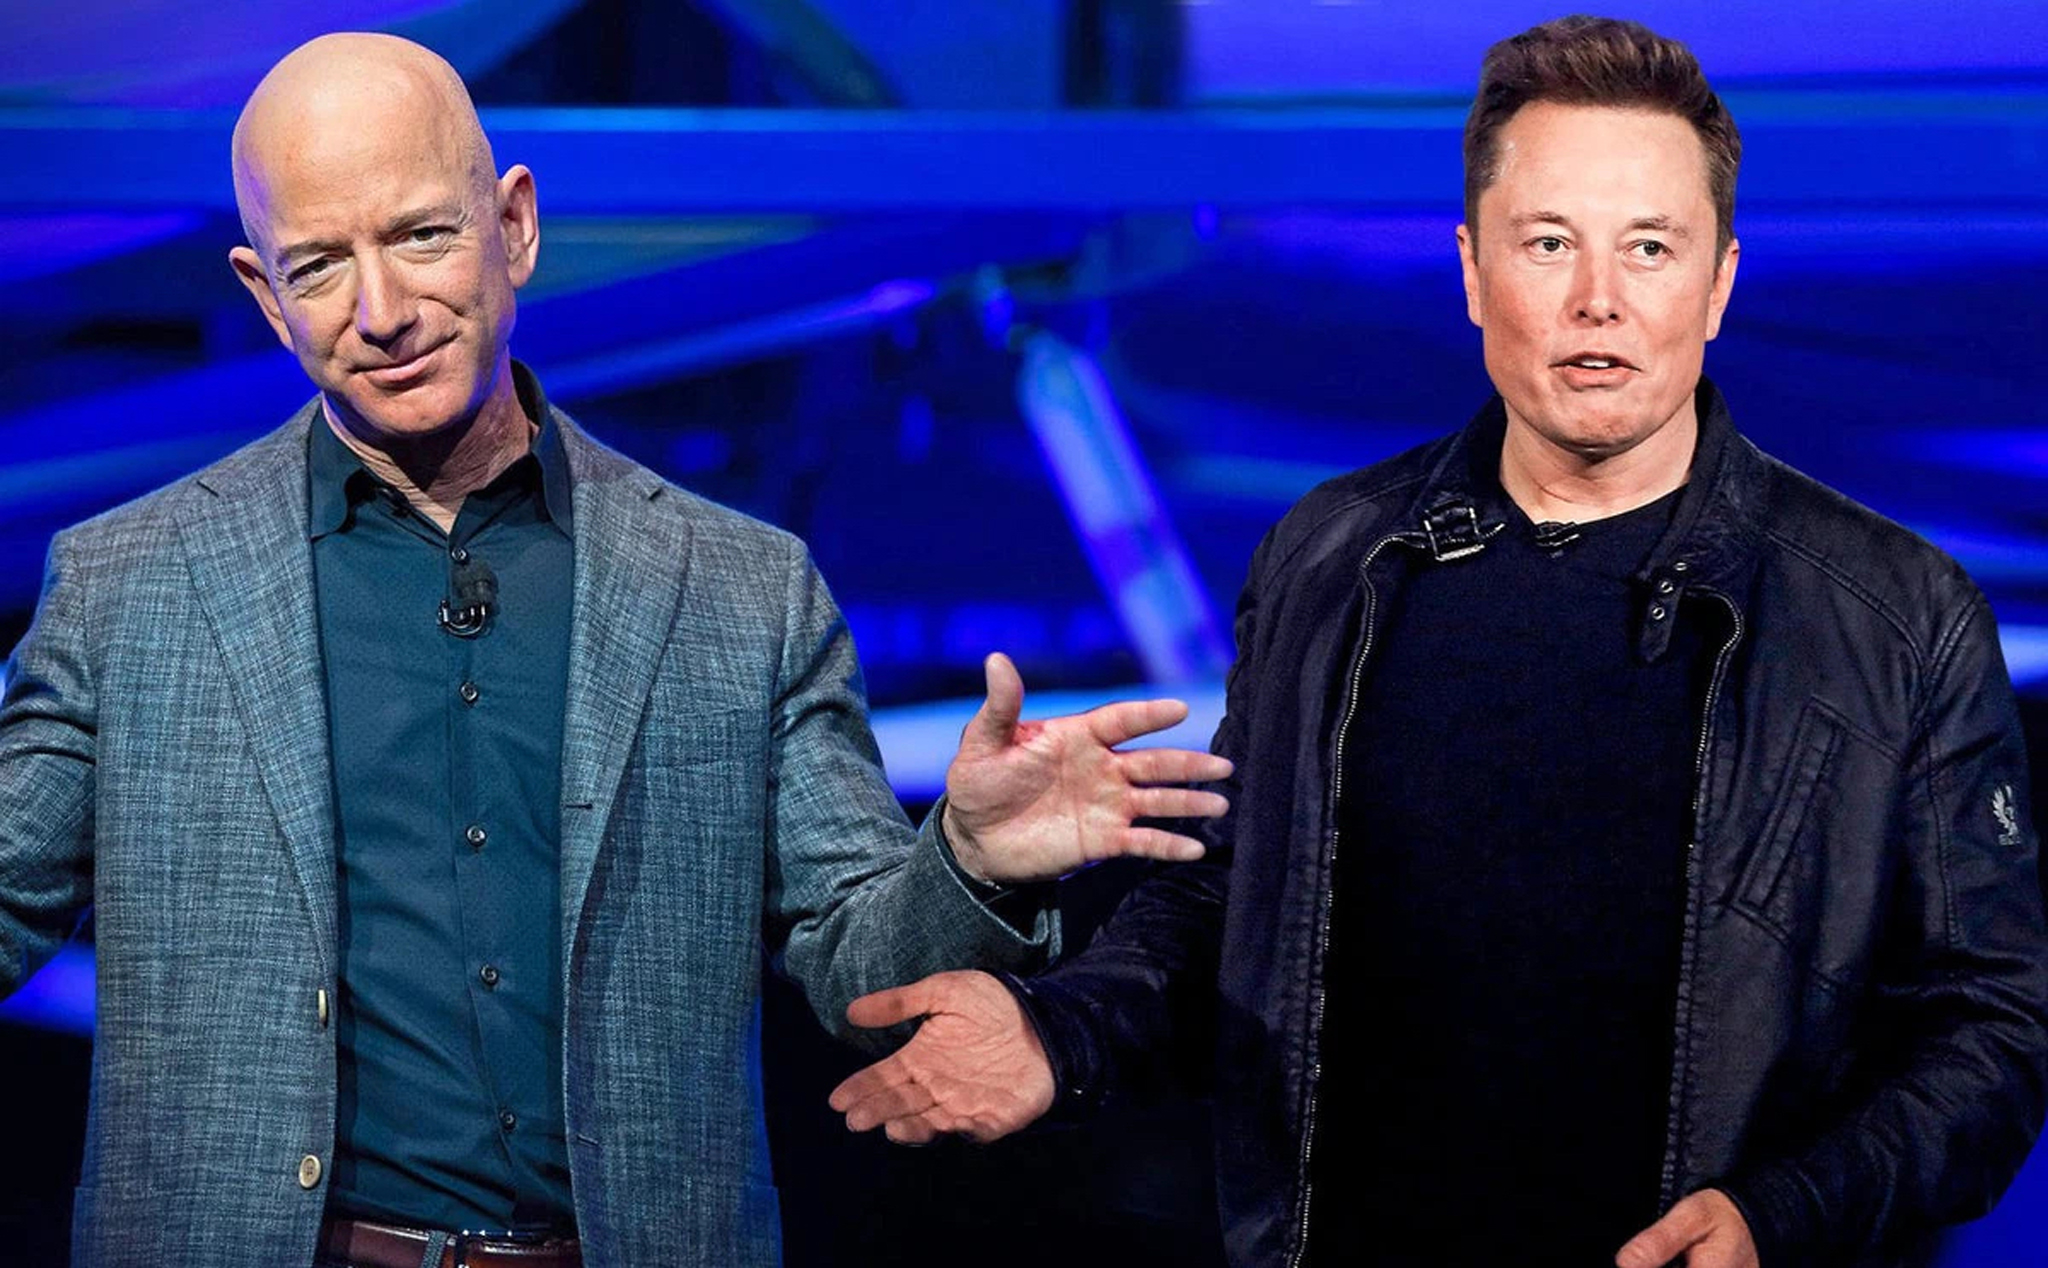 Elon Musk "cà khịa" Jeff Bezos khi bỏ xa người đồng nghiệp trên bảng xếp hạng